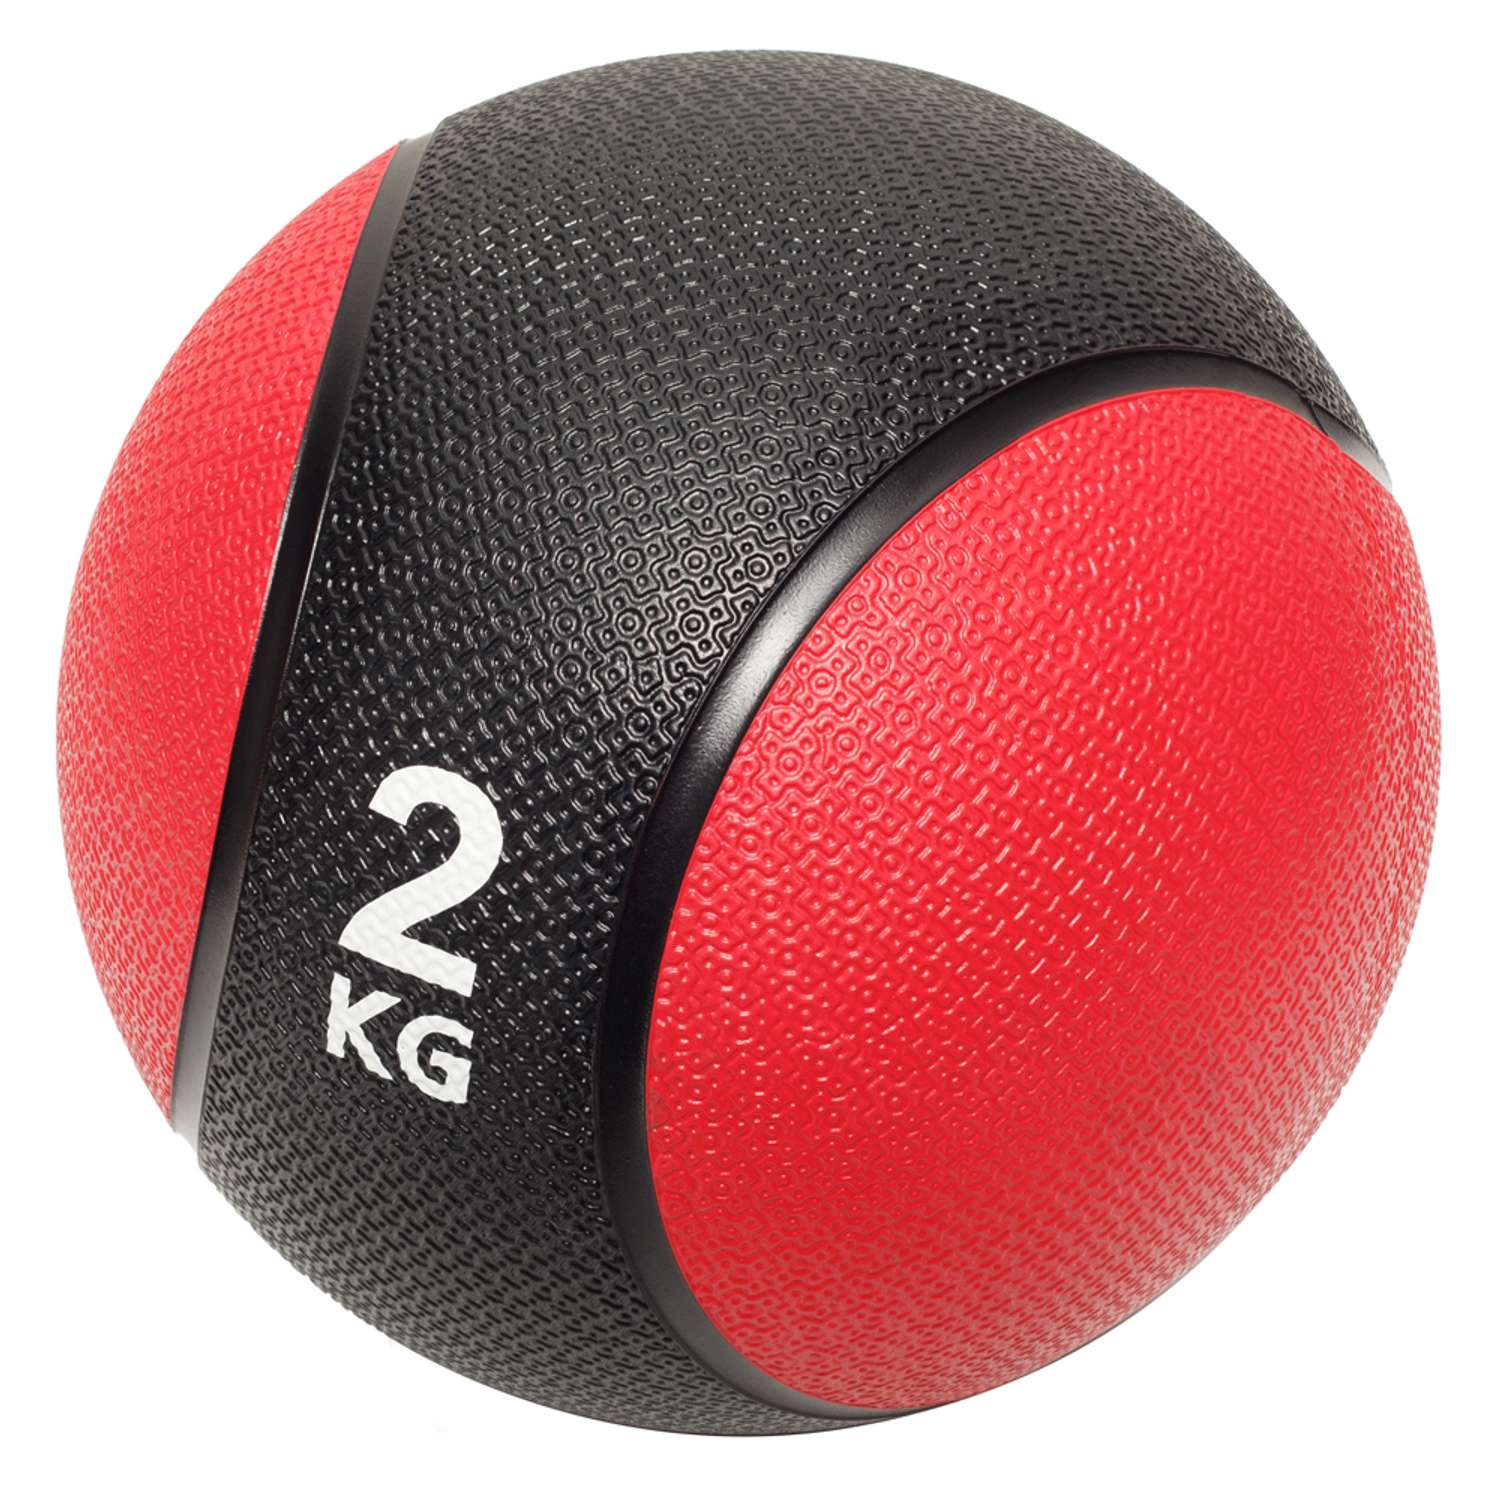 Медбол STRONG BODY медицинский мяч для фитнеса черно-красный 2 кг - фото 2